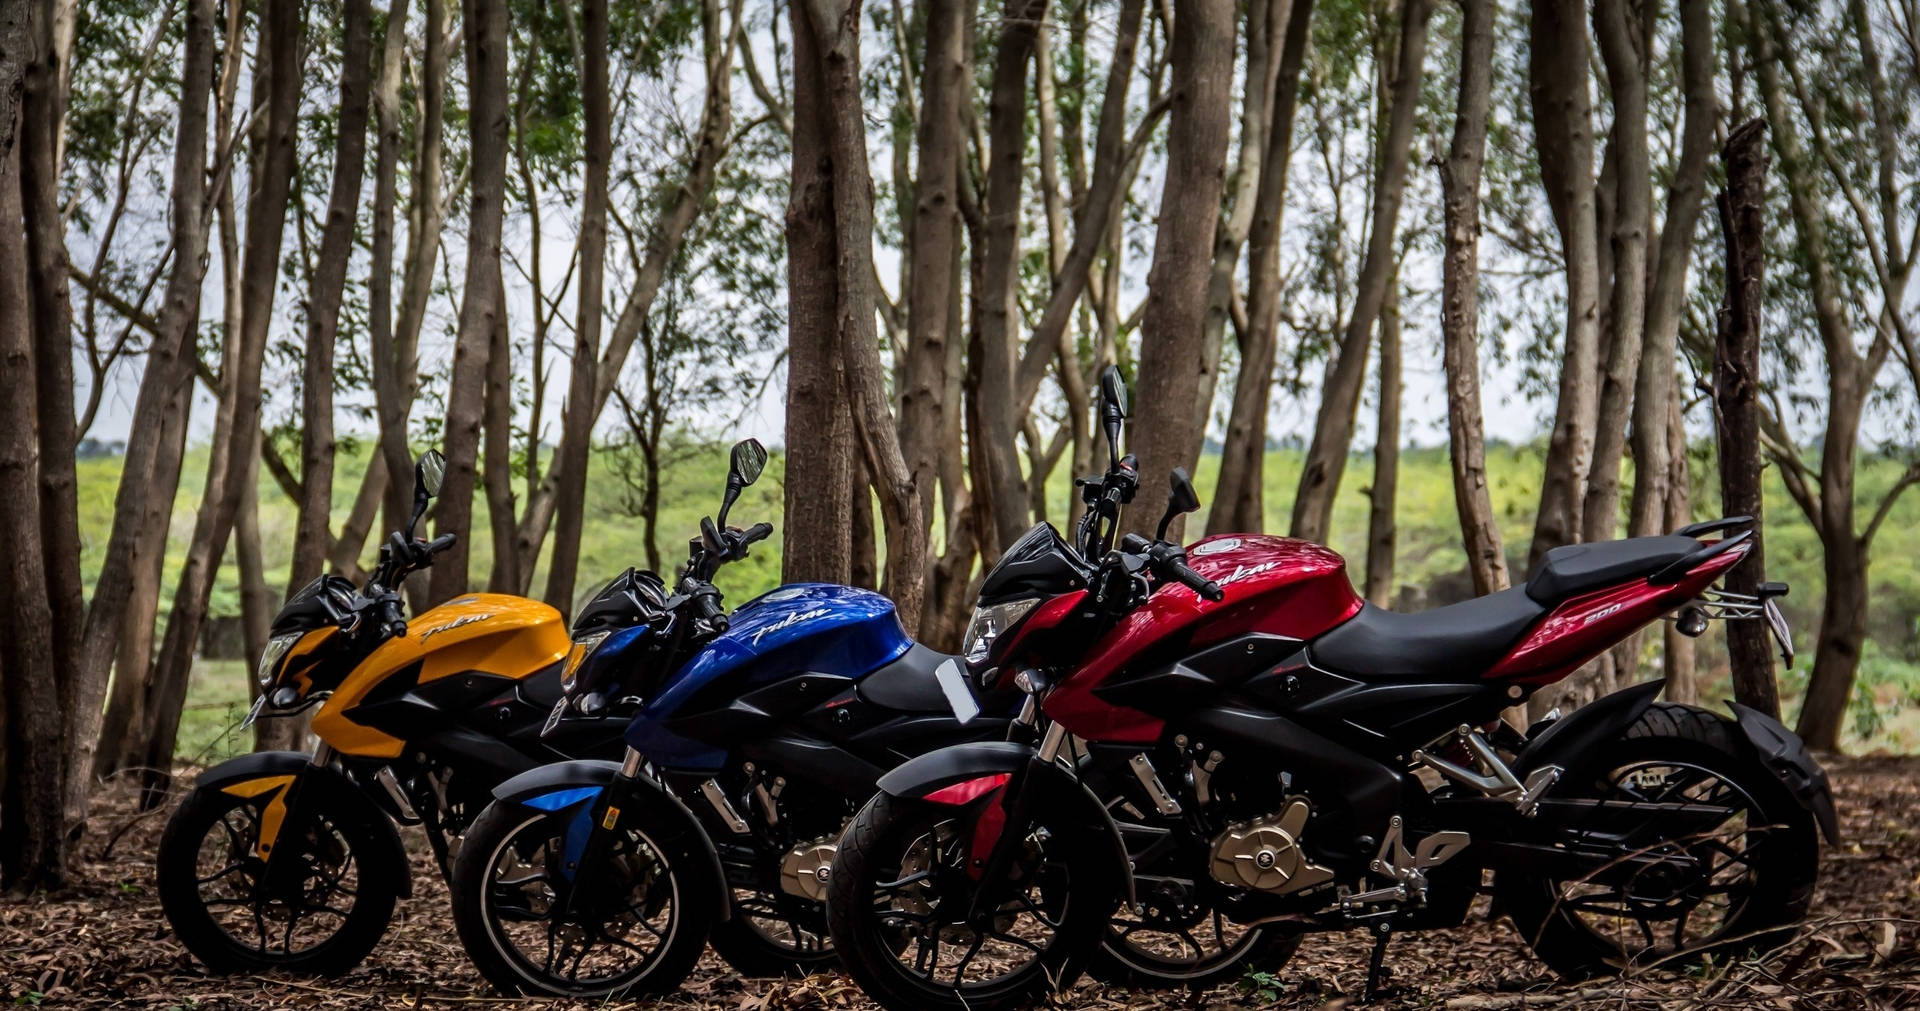 Motocicletasns 200 En El Bosque Fondo de pantalla